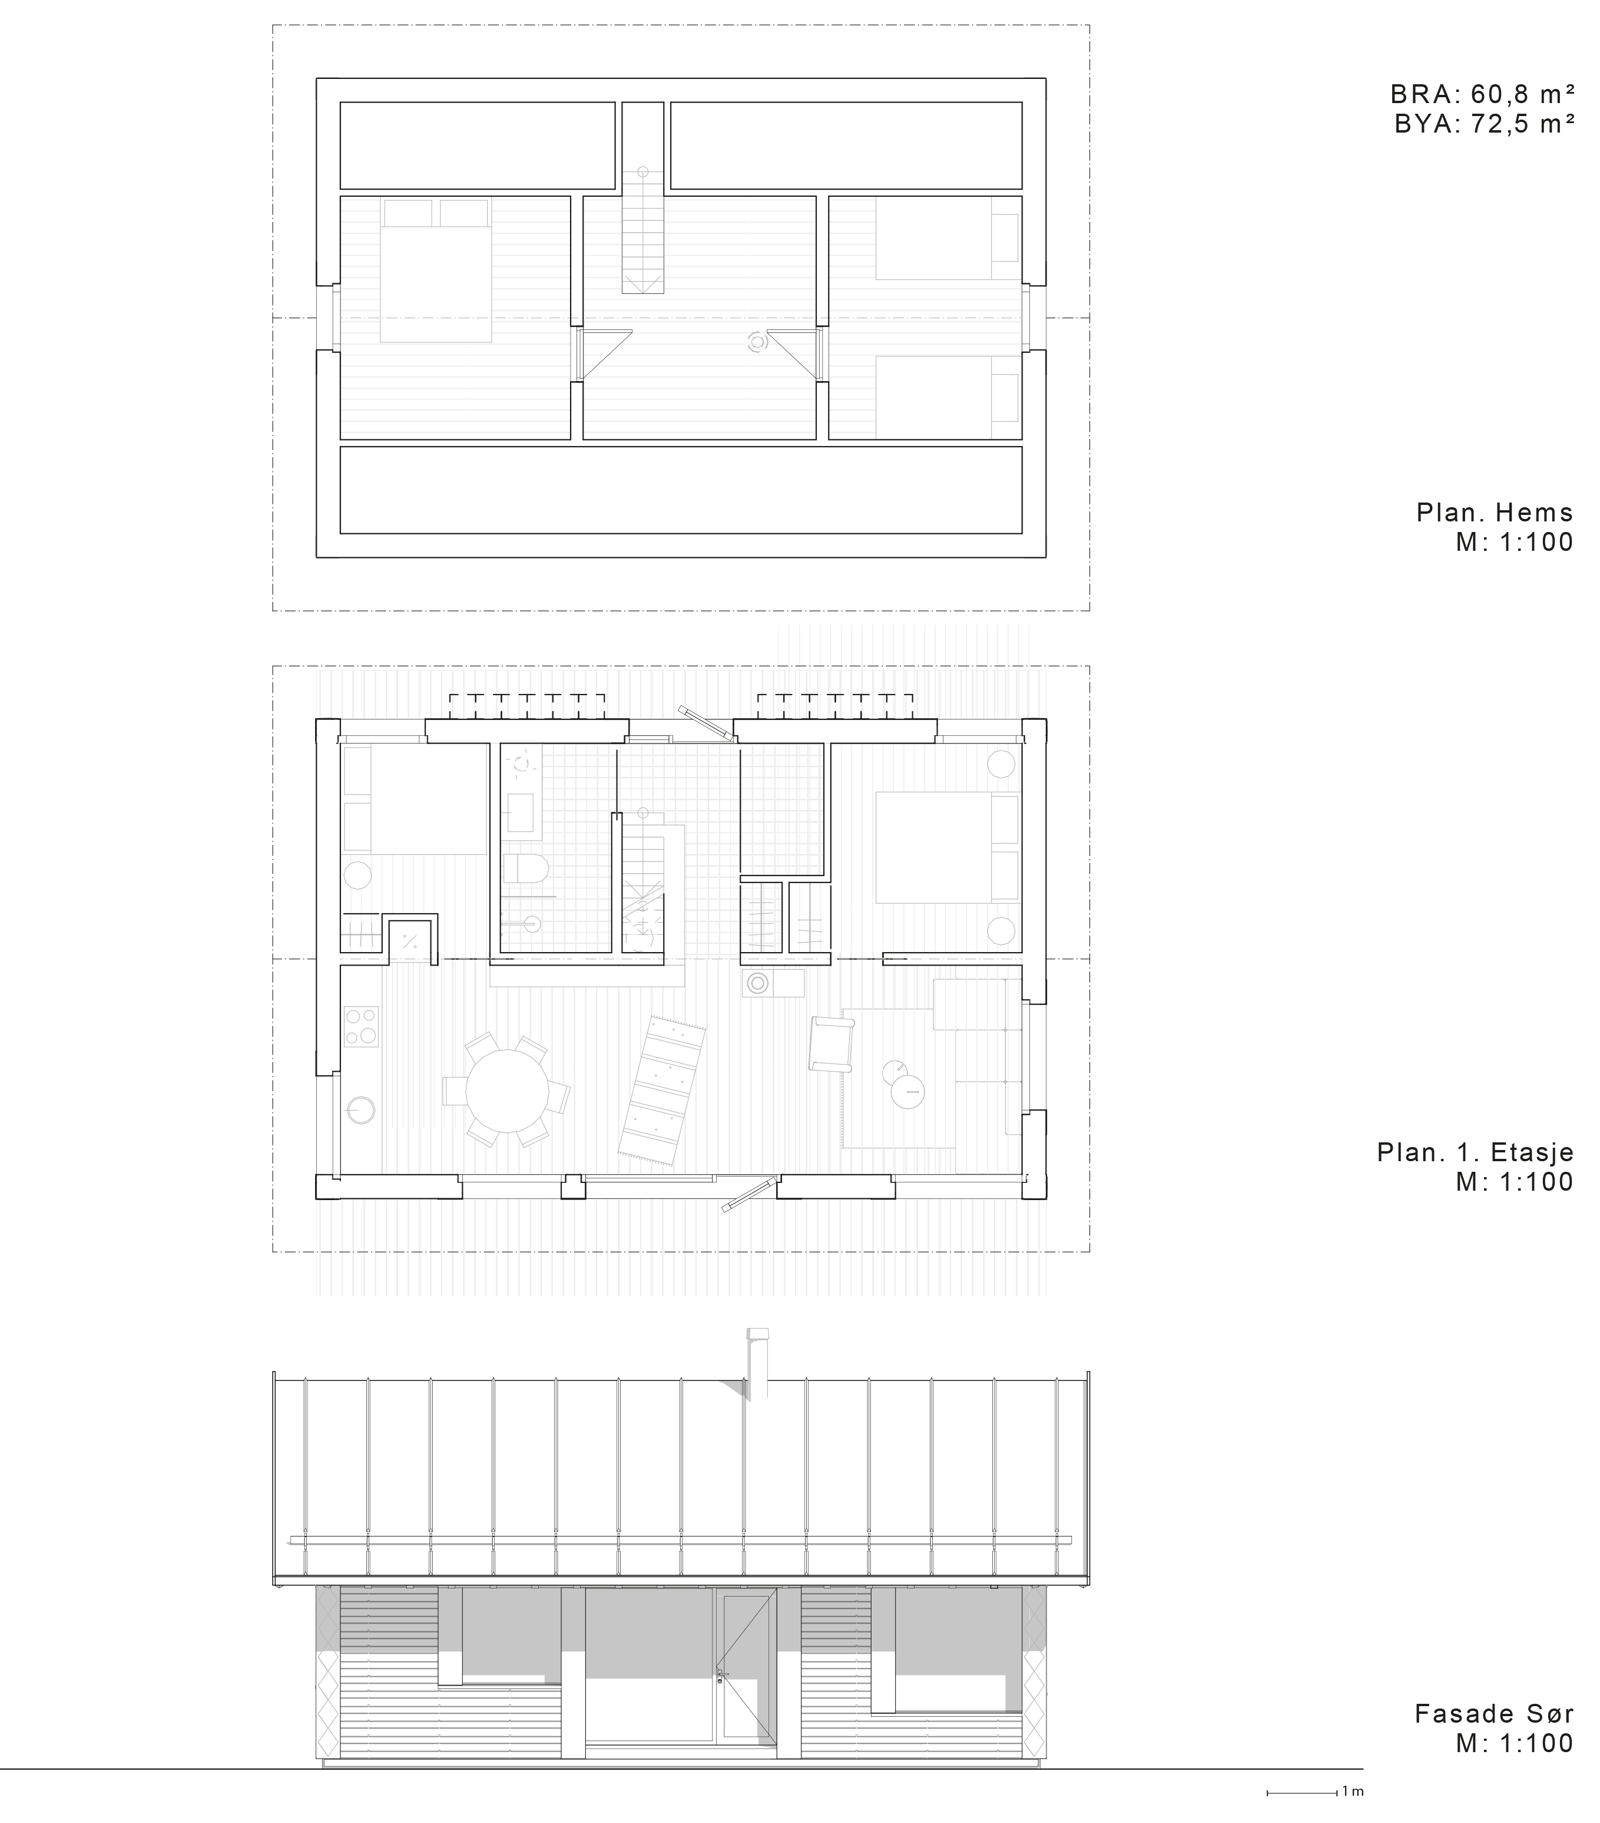 Plan tegning av første etasje og hems og fasade oppriss. Arkitekt tegning. 